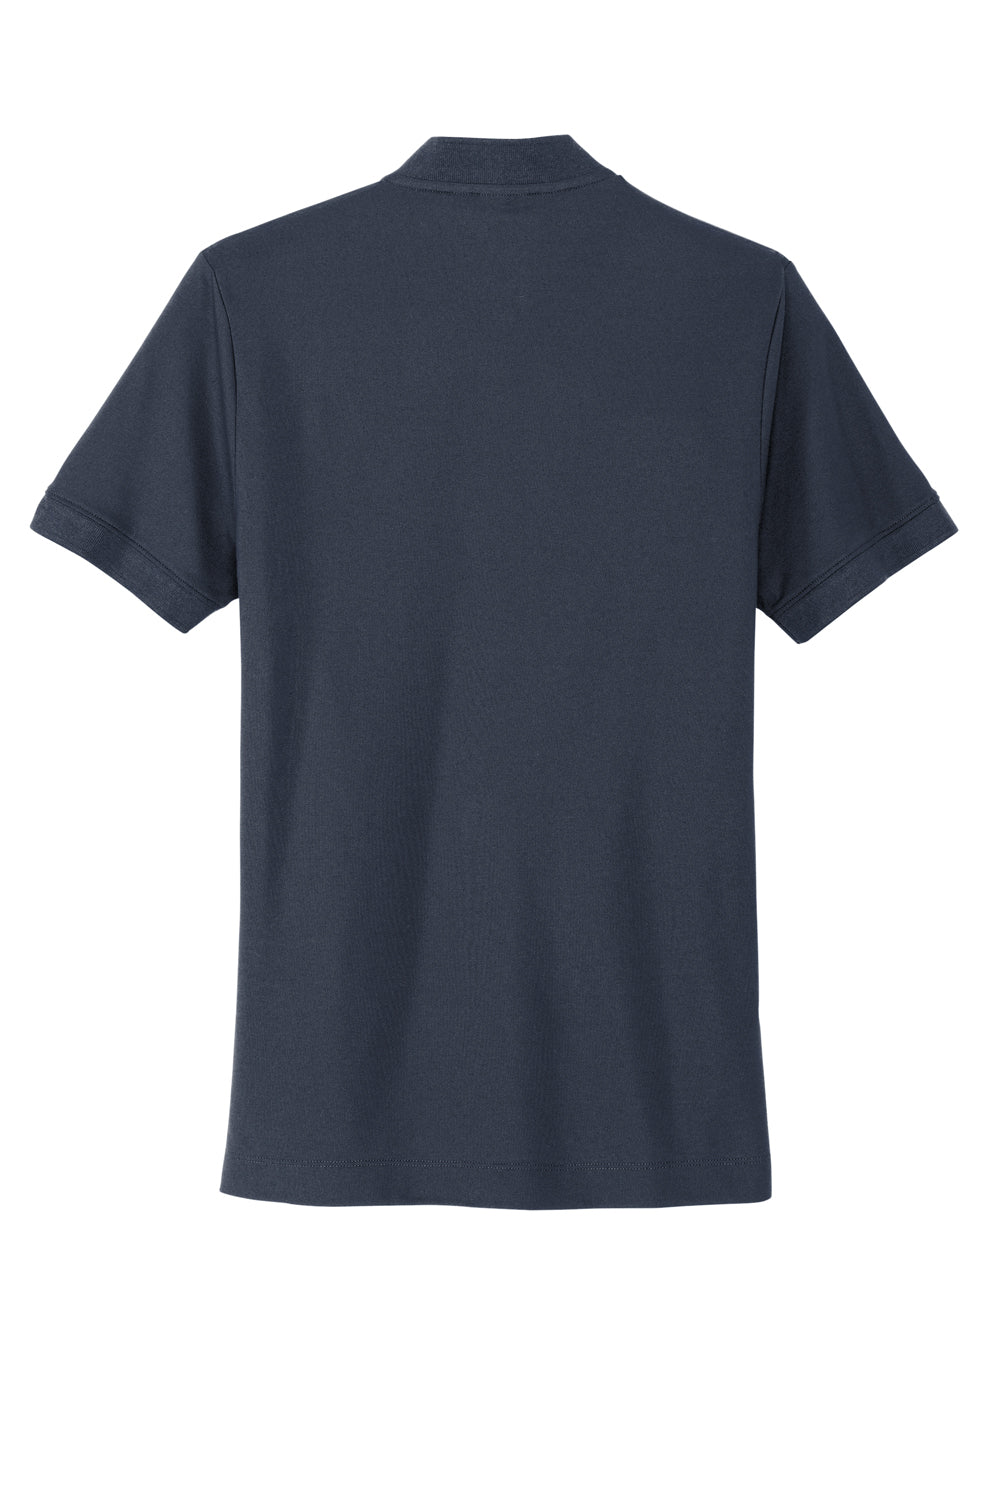 Mercer+Mettle MM1008 Stretch Pique Short Sleeve Henley T-Shirt Night Navy Blue Flat Back